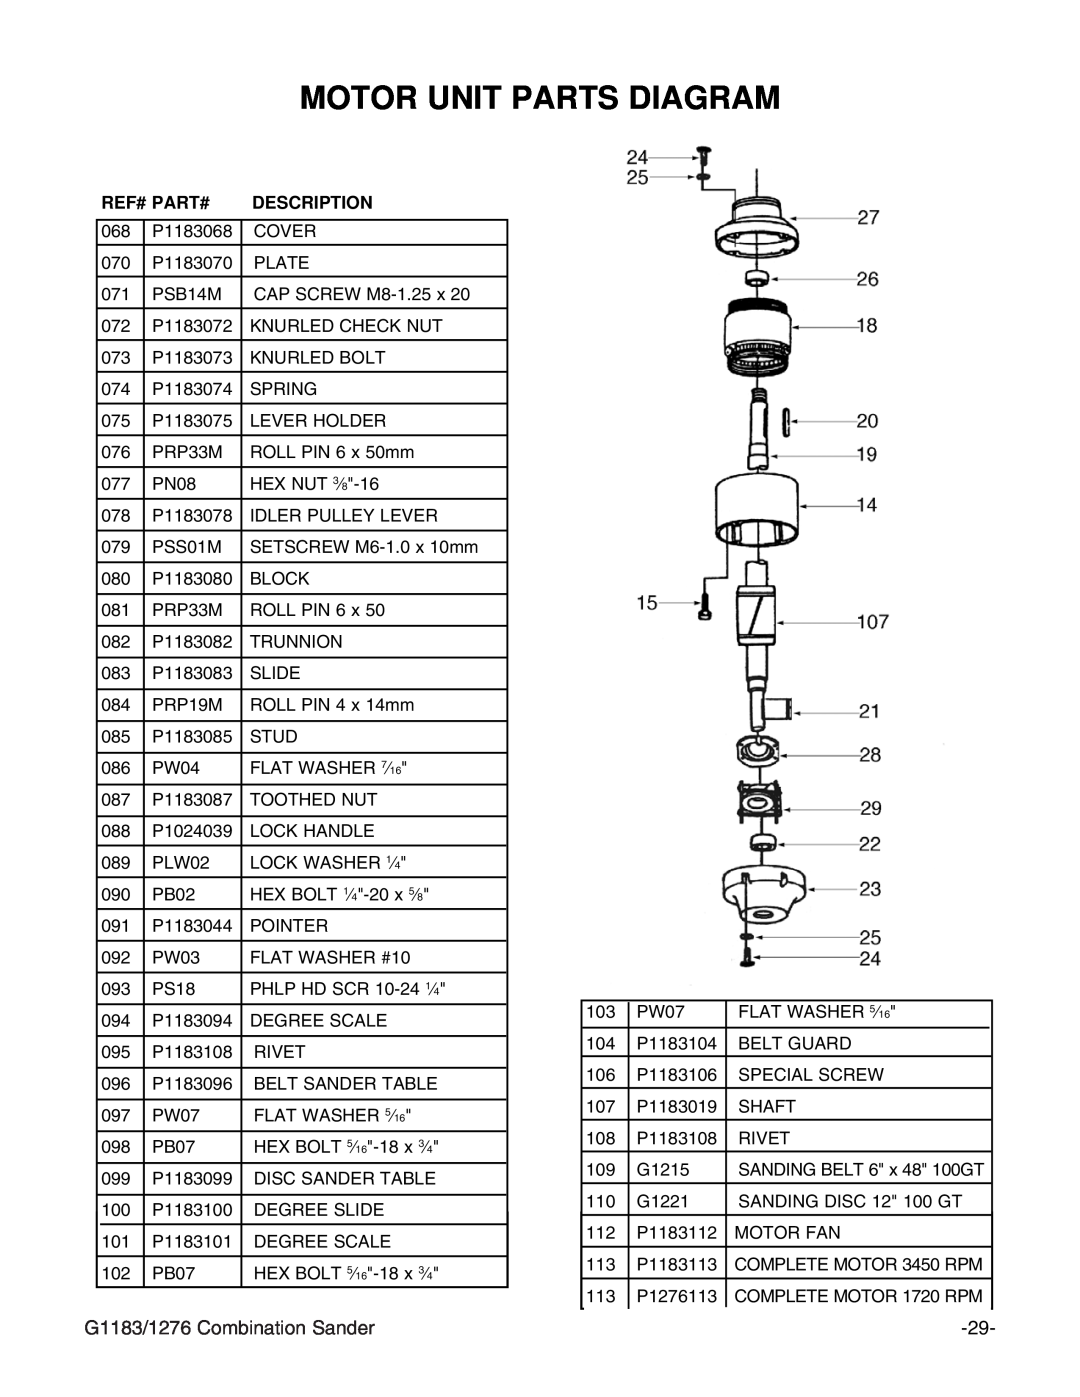 Grizzly G1276 instruction manual Motor Unit Parts Diagram, G1183/1276 Combination Sander, Ref# Part#, Description 